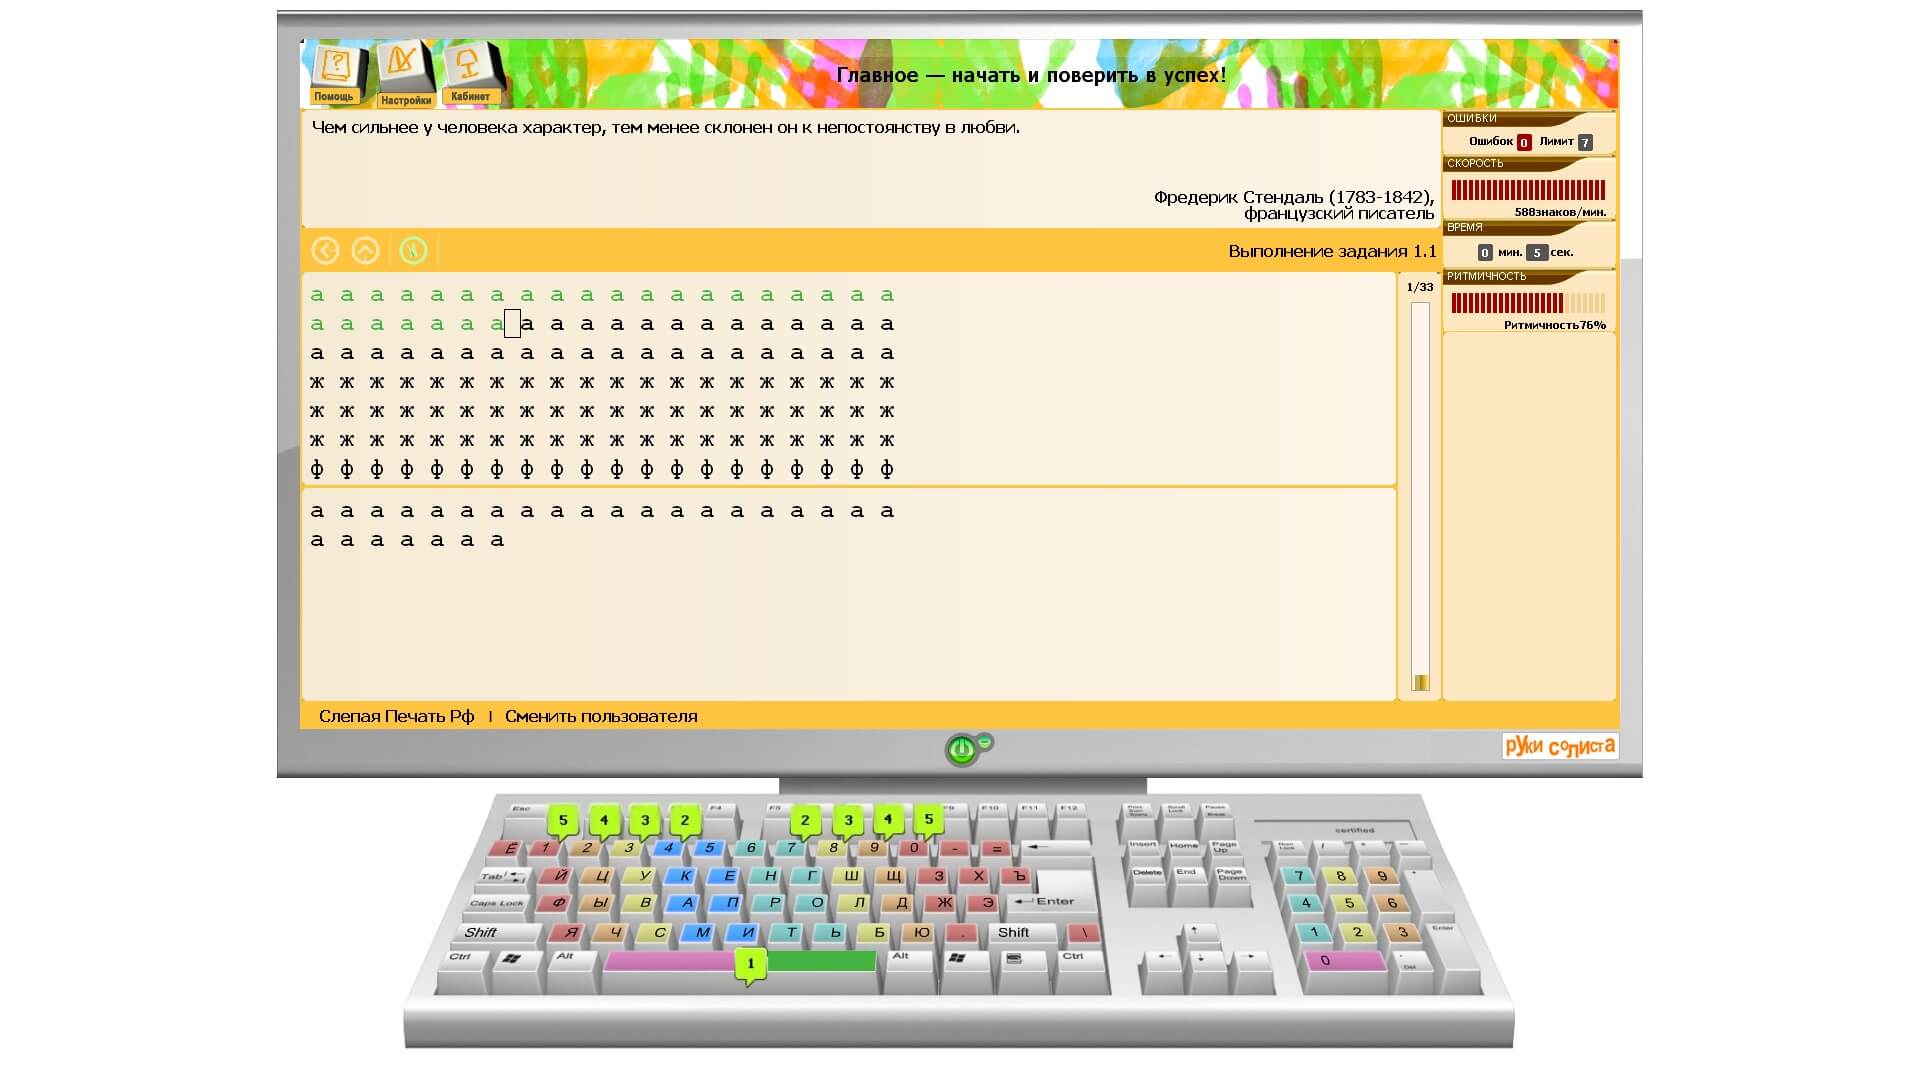 Скриншот клавиатурного тренажера Руки солиста